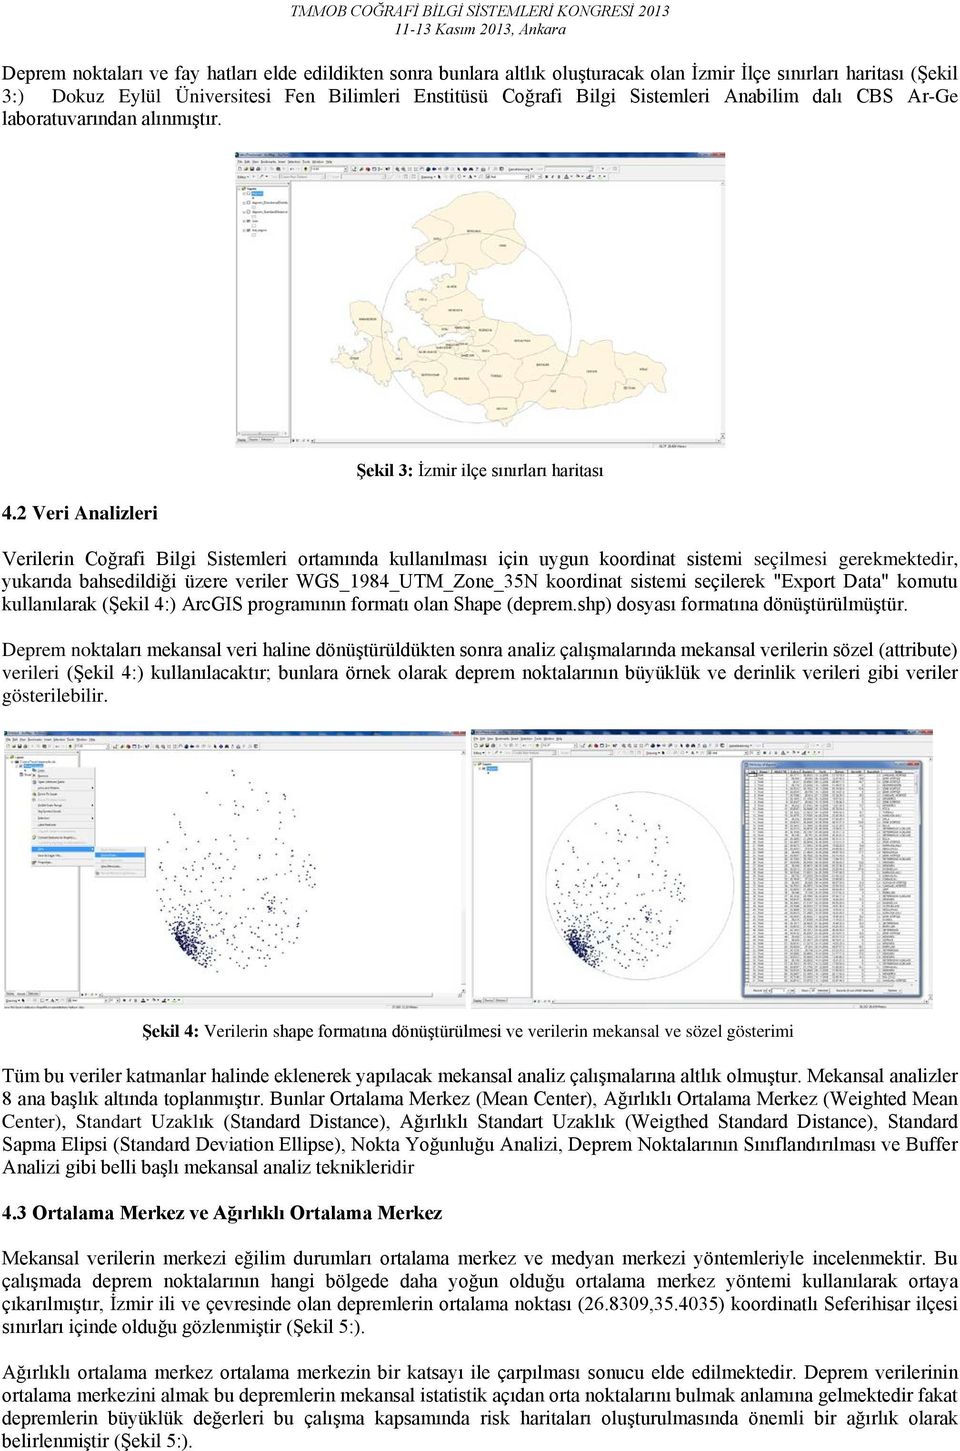 2 Veri Analizleri Şekil 3: İzmir ilçe sınırları haritası Verilerin Coğrafi Bilgi Sistemleri ortamında kullanılması için uygun koordinat sistemi seçilmesi gerekmektedir, yukarıda bahsedildiği üzere